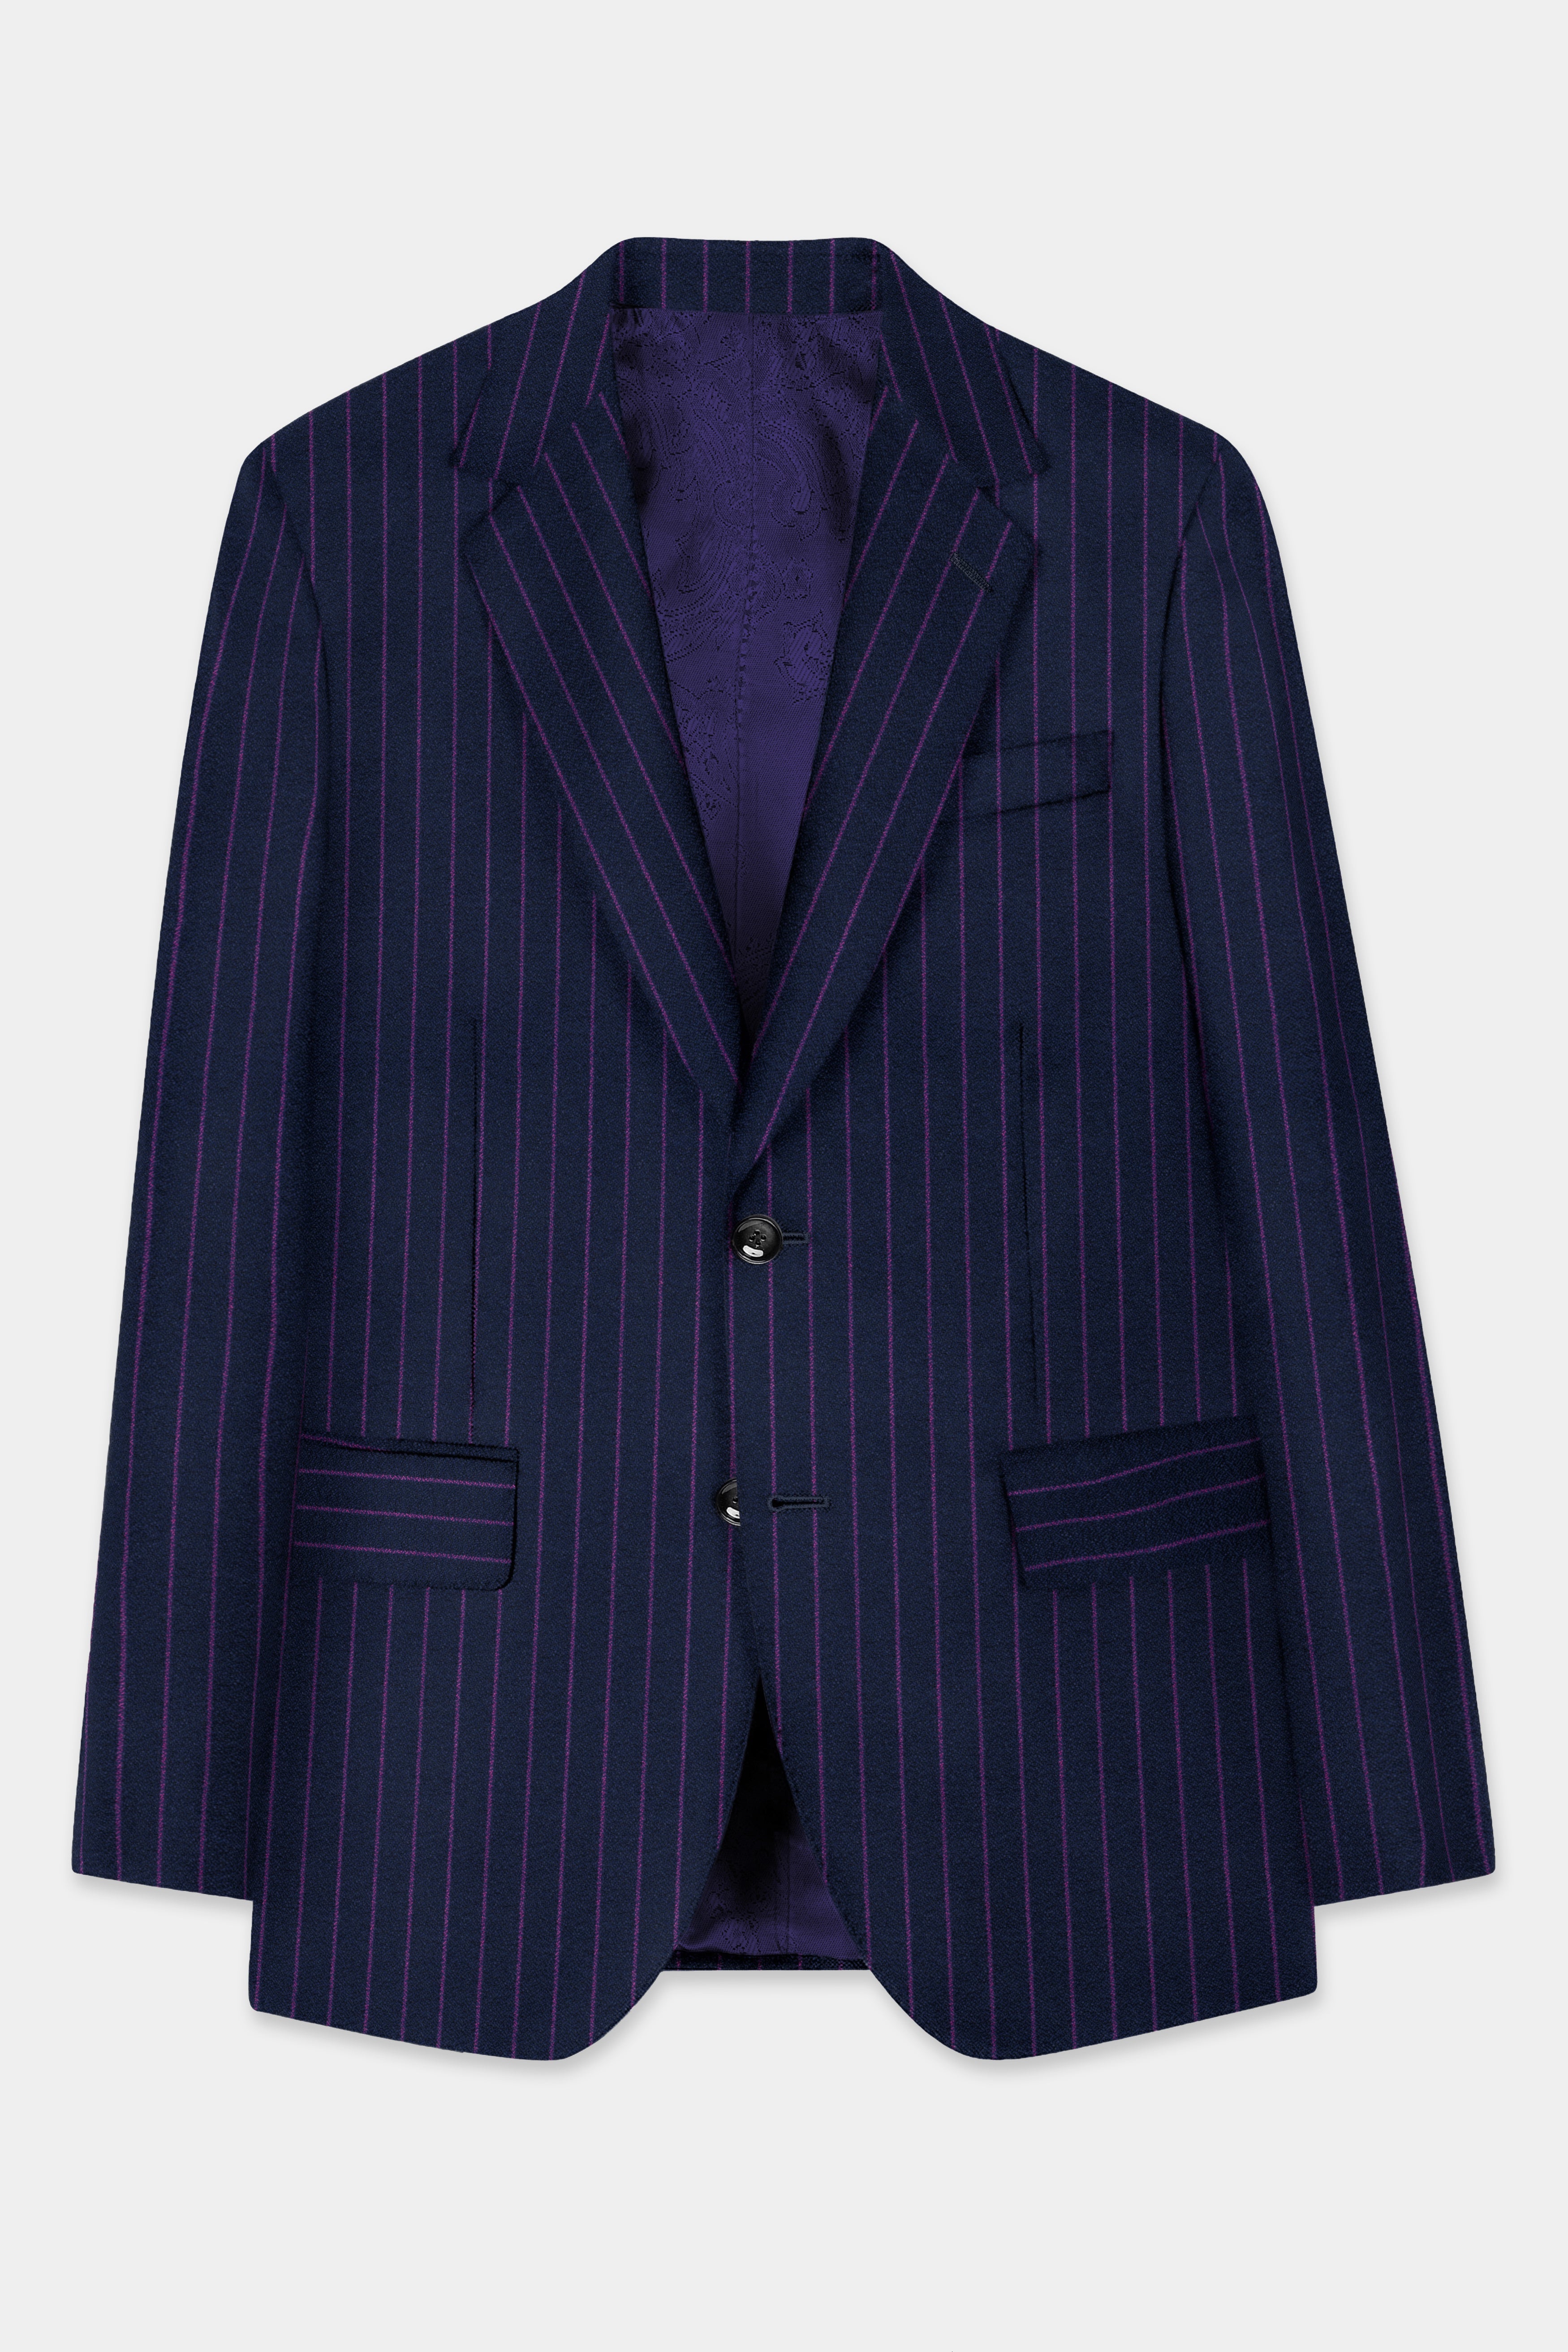 Steel Blue with Grape Purple Striped Wool Blend Blazer